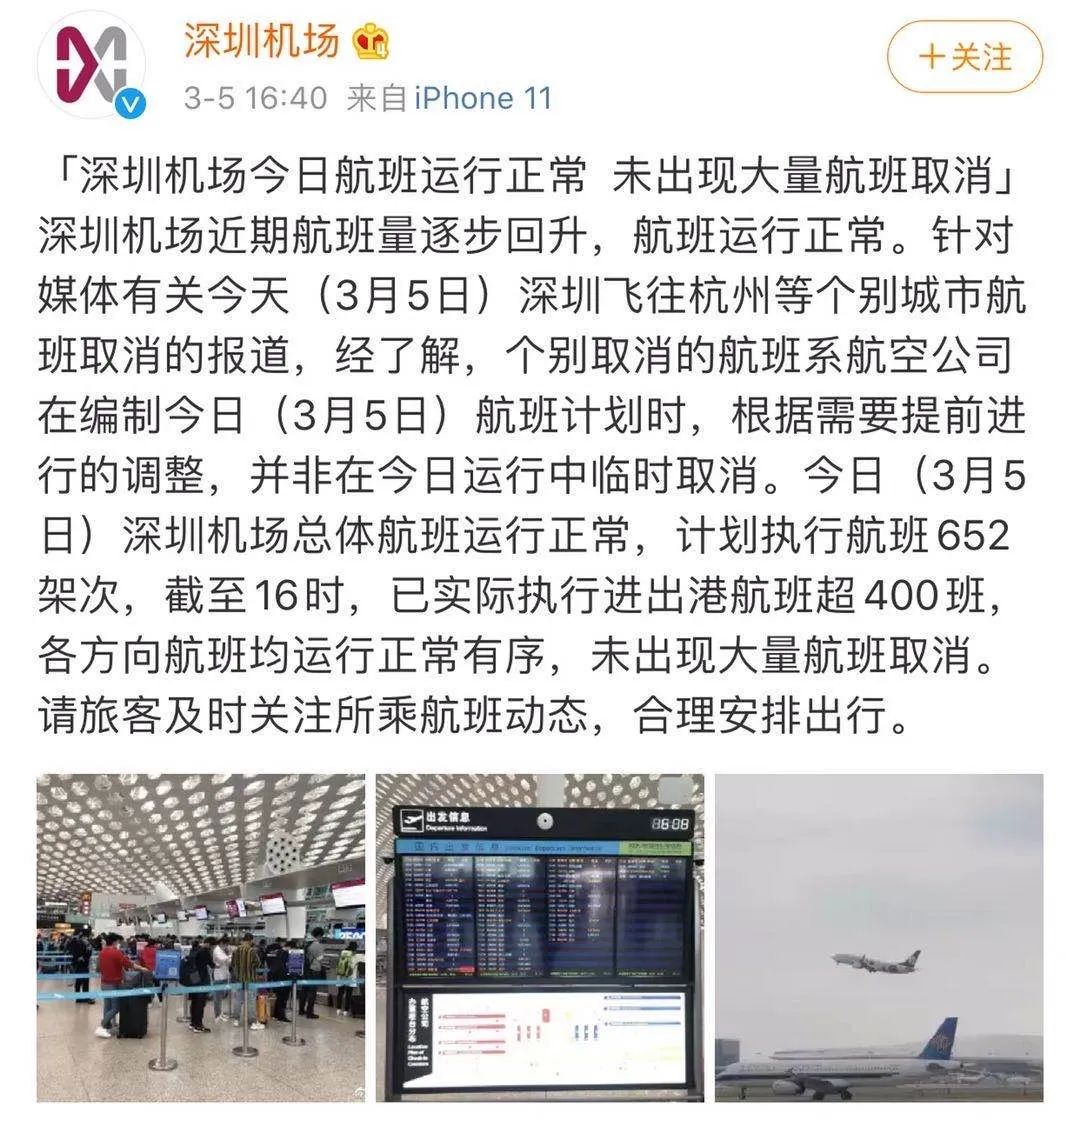 杭州机场回应“部分航班因公共安全原因取消”：不实